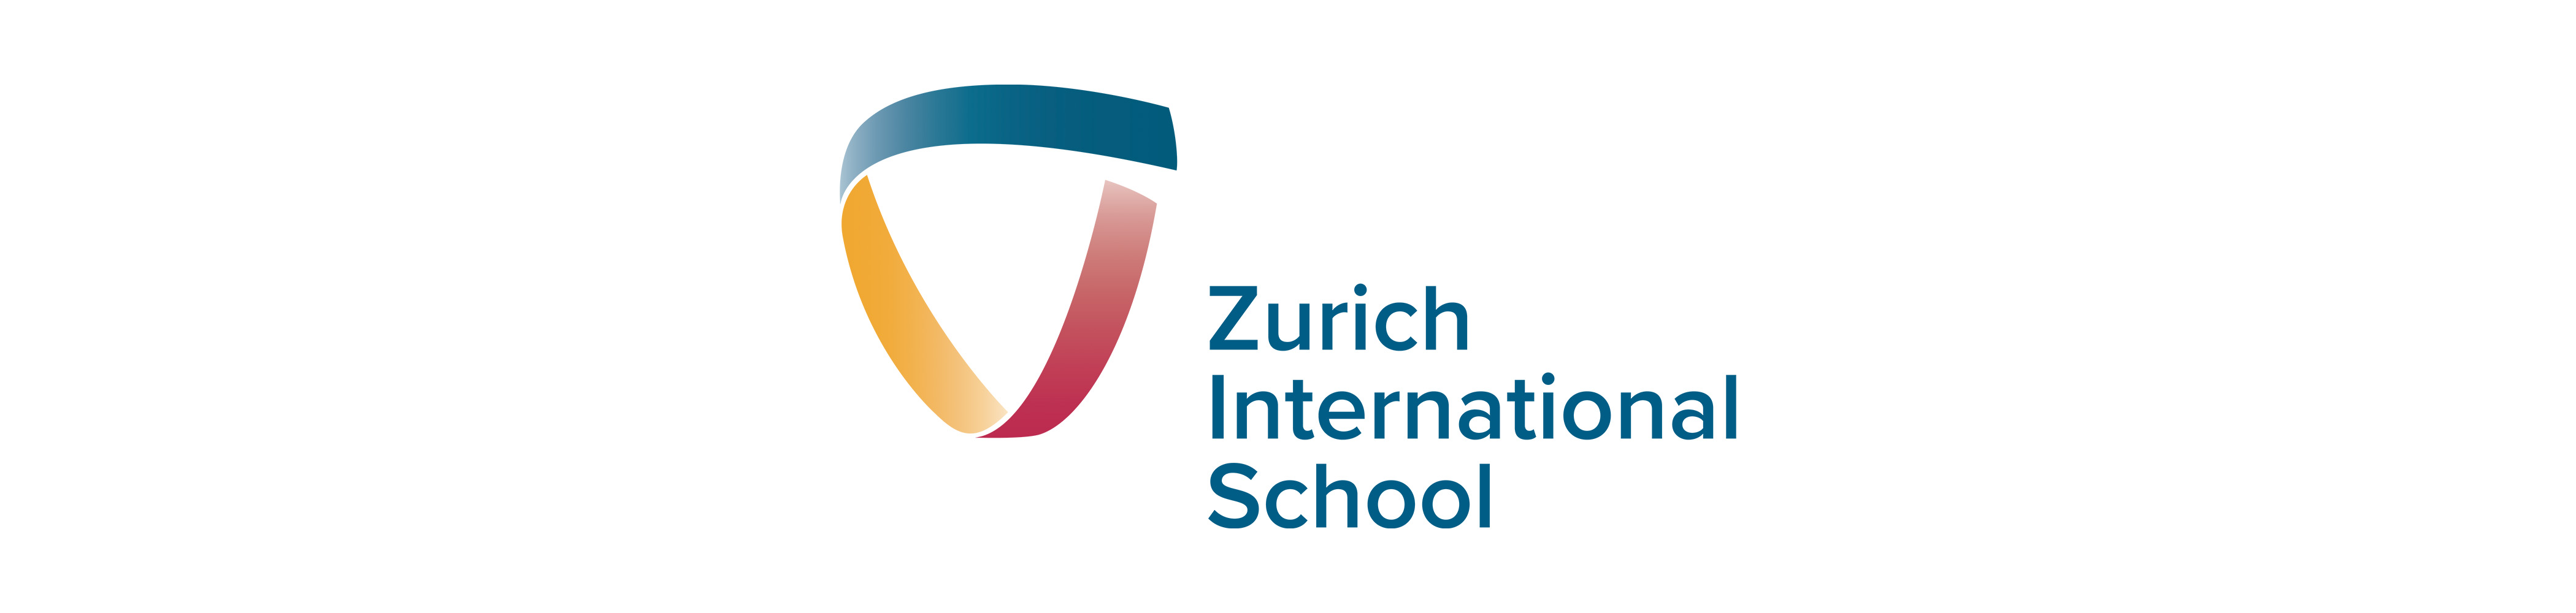 Logo: Zurich International School